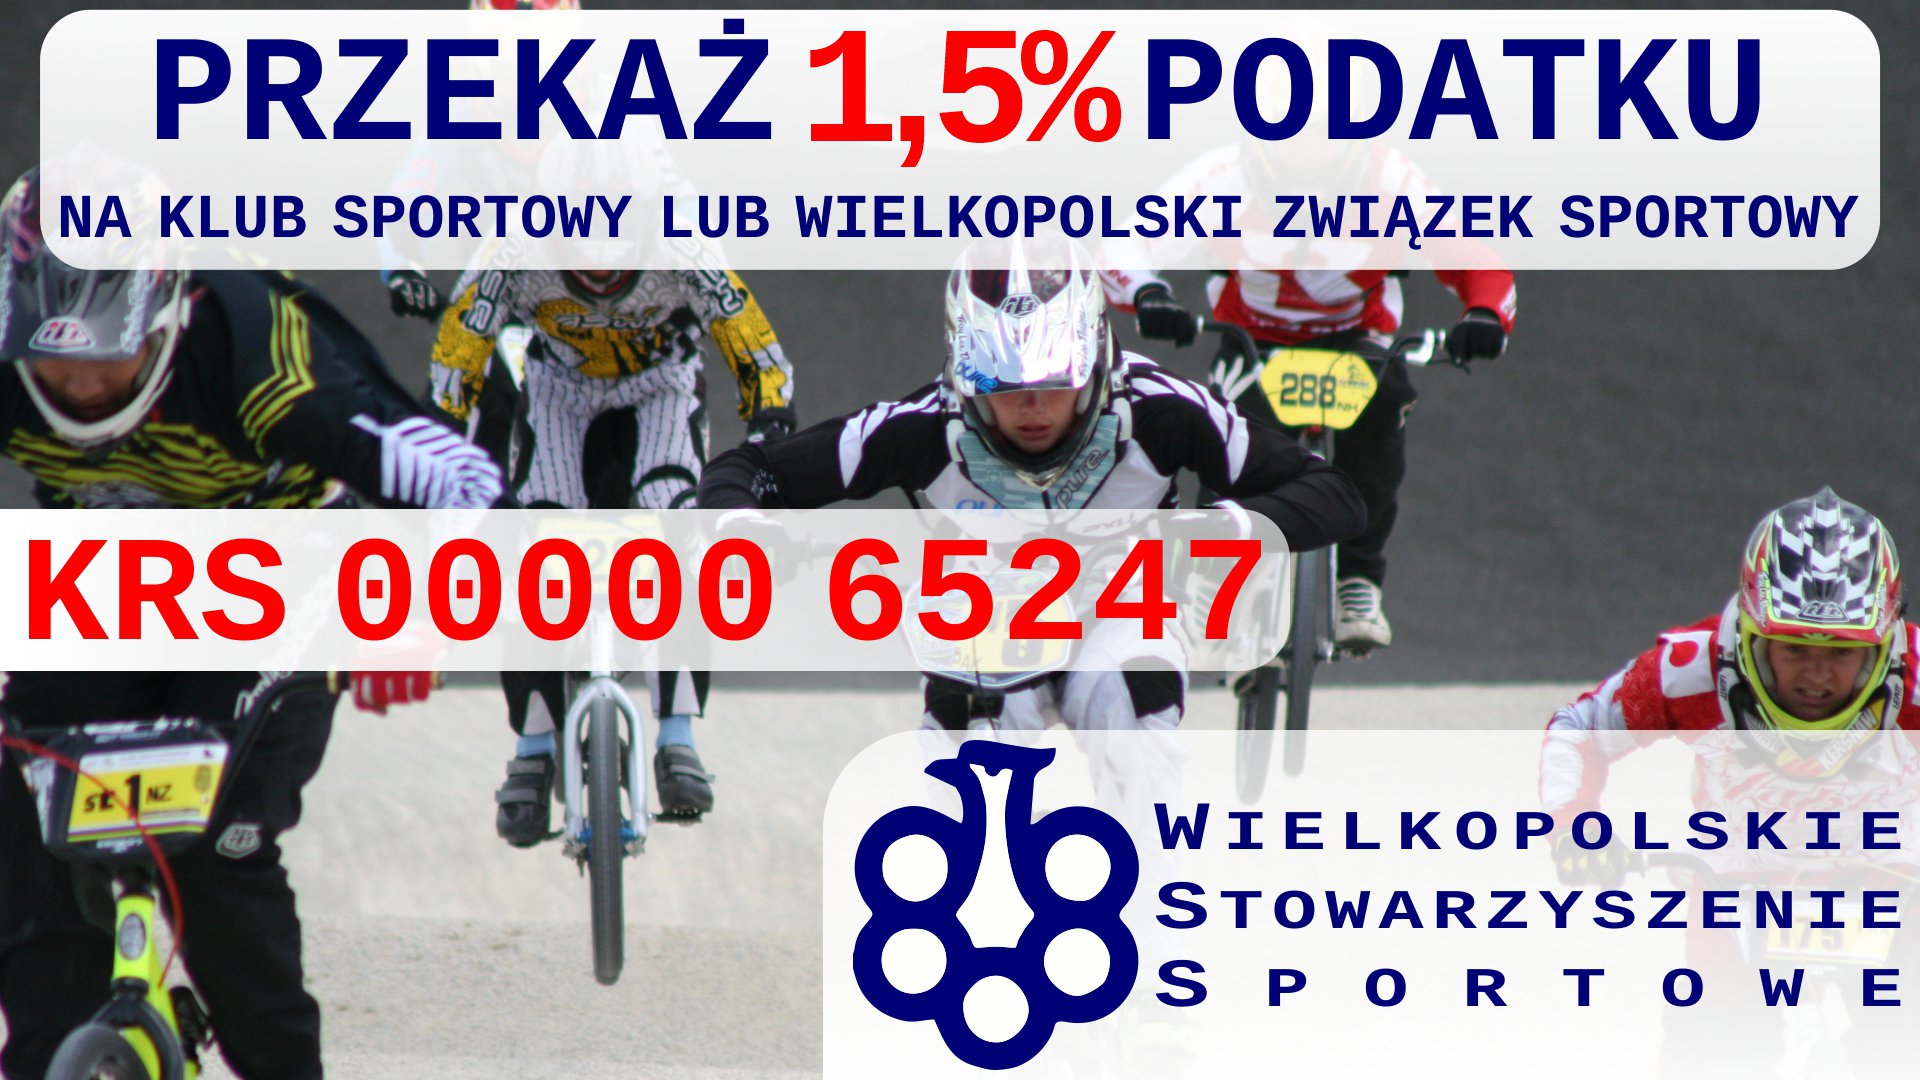 Ulotka zachęcająca do przekazania 1,5% podatku na wielkopolski klub sportowy lub związek sportowy. Na ulotce podano KRS 0000065247. W tle zdjęcie sportu młodzieżowego - kolarstwa BMX.